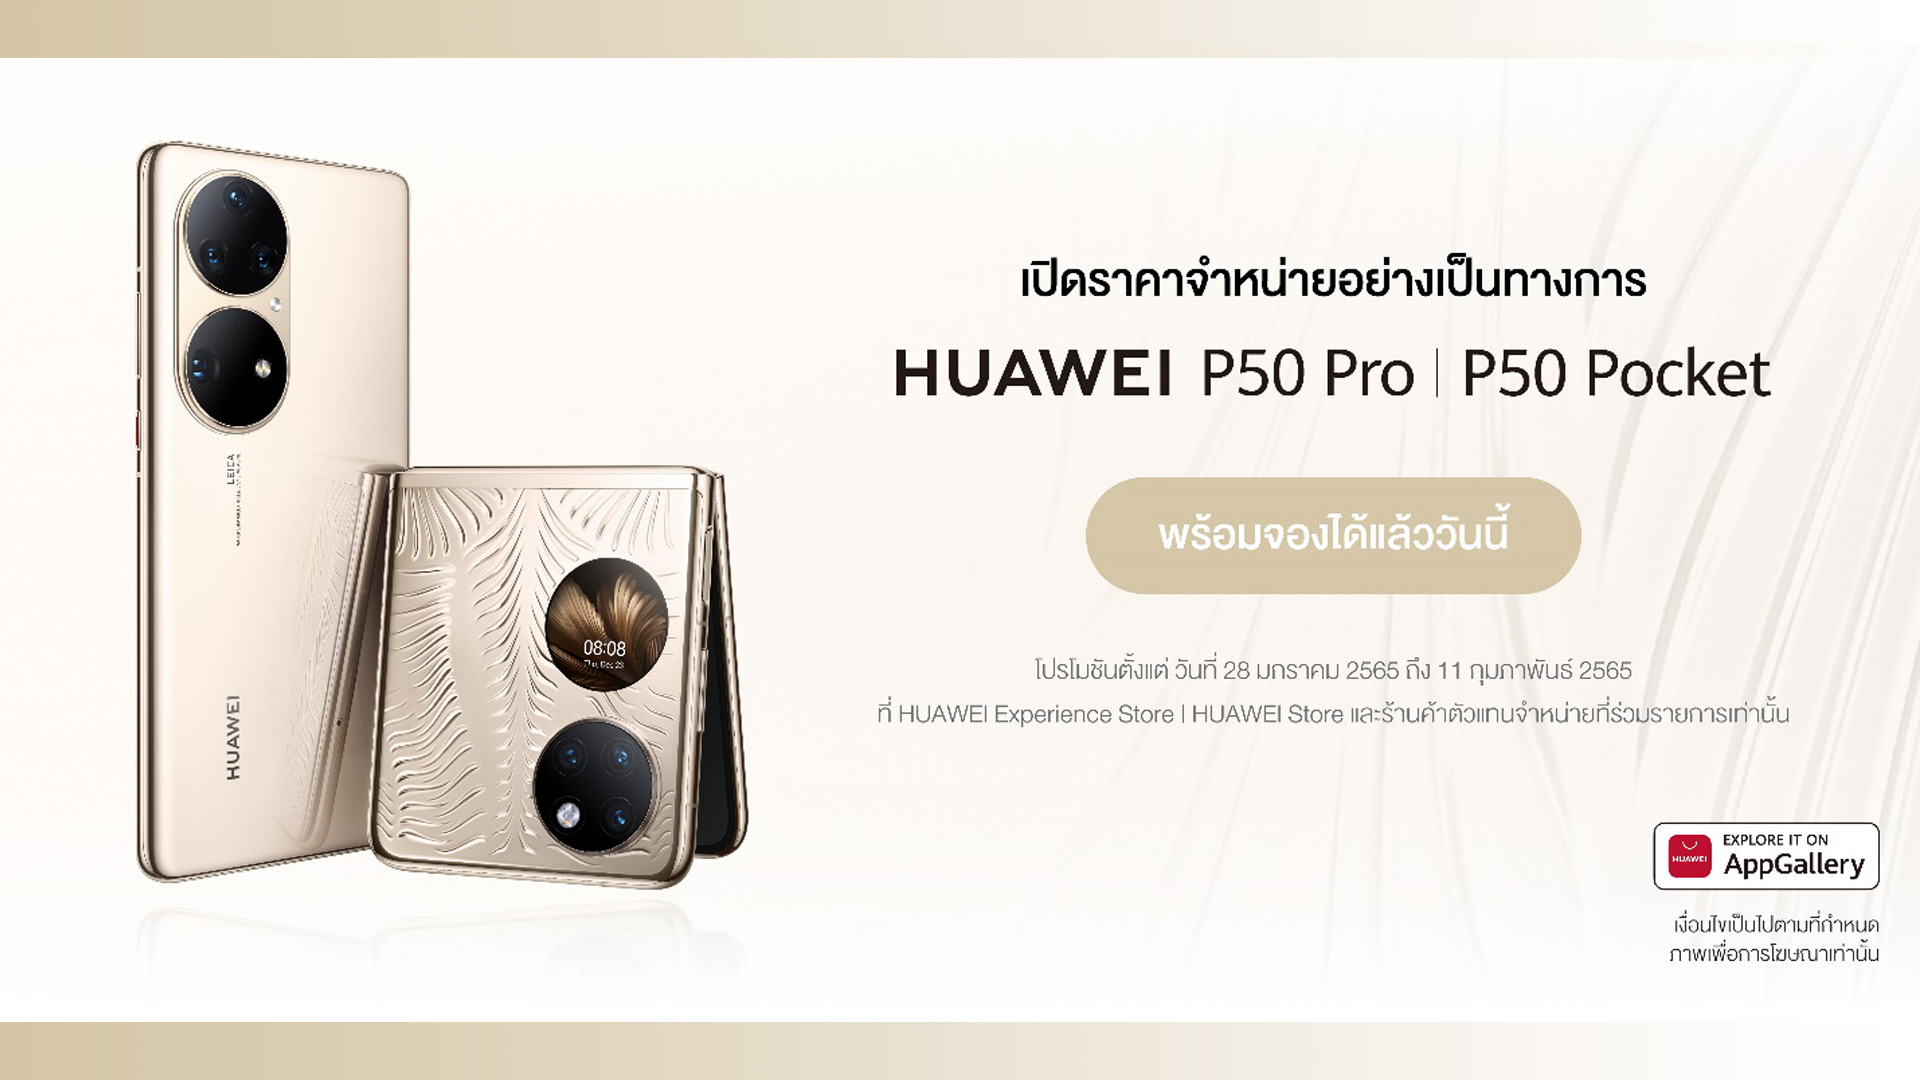 เปิดราคา HUAWEI P50 Pro และ HUAWEI P50 Pocket พร้อมเทคโนโลยีการถ่ายภาพอัจฉริยะ ผสานดีไซน์สุดล้ำ